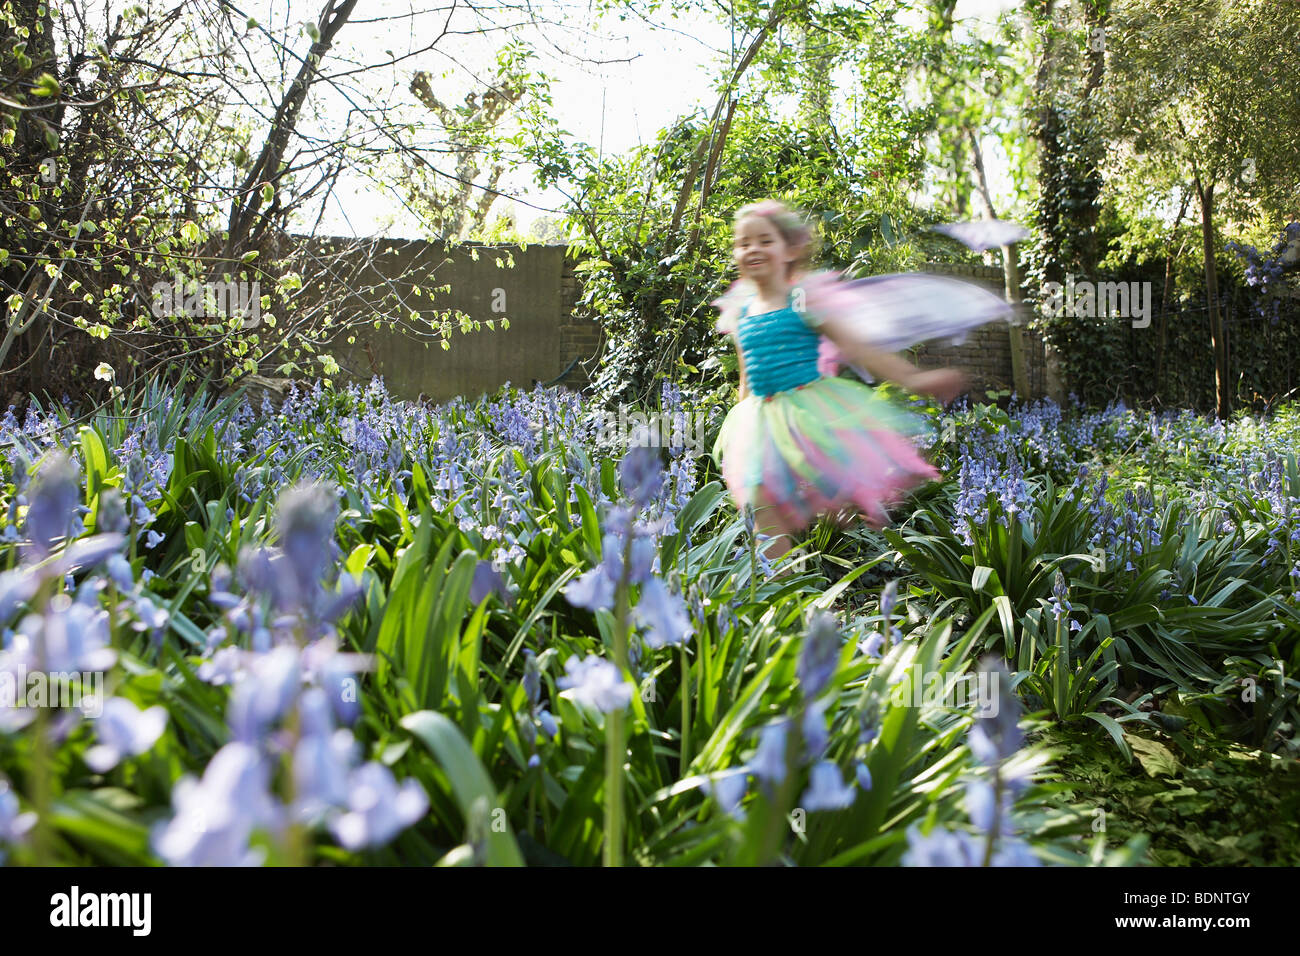 Jeune fille (5-6) s'exécutant dans le jardin de fleurs portant des costumes de fées, motion blur Banque D'Images